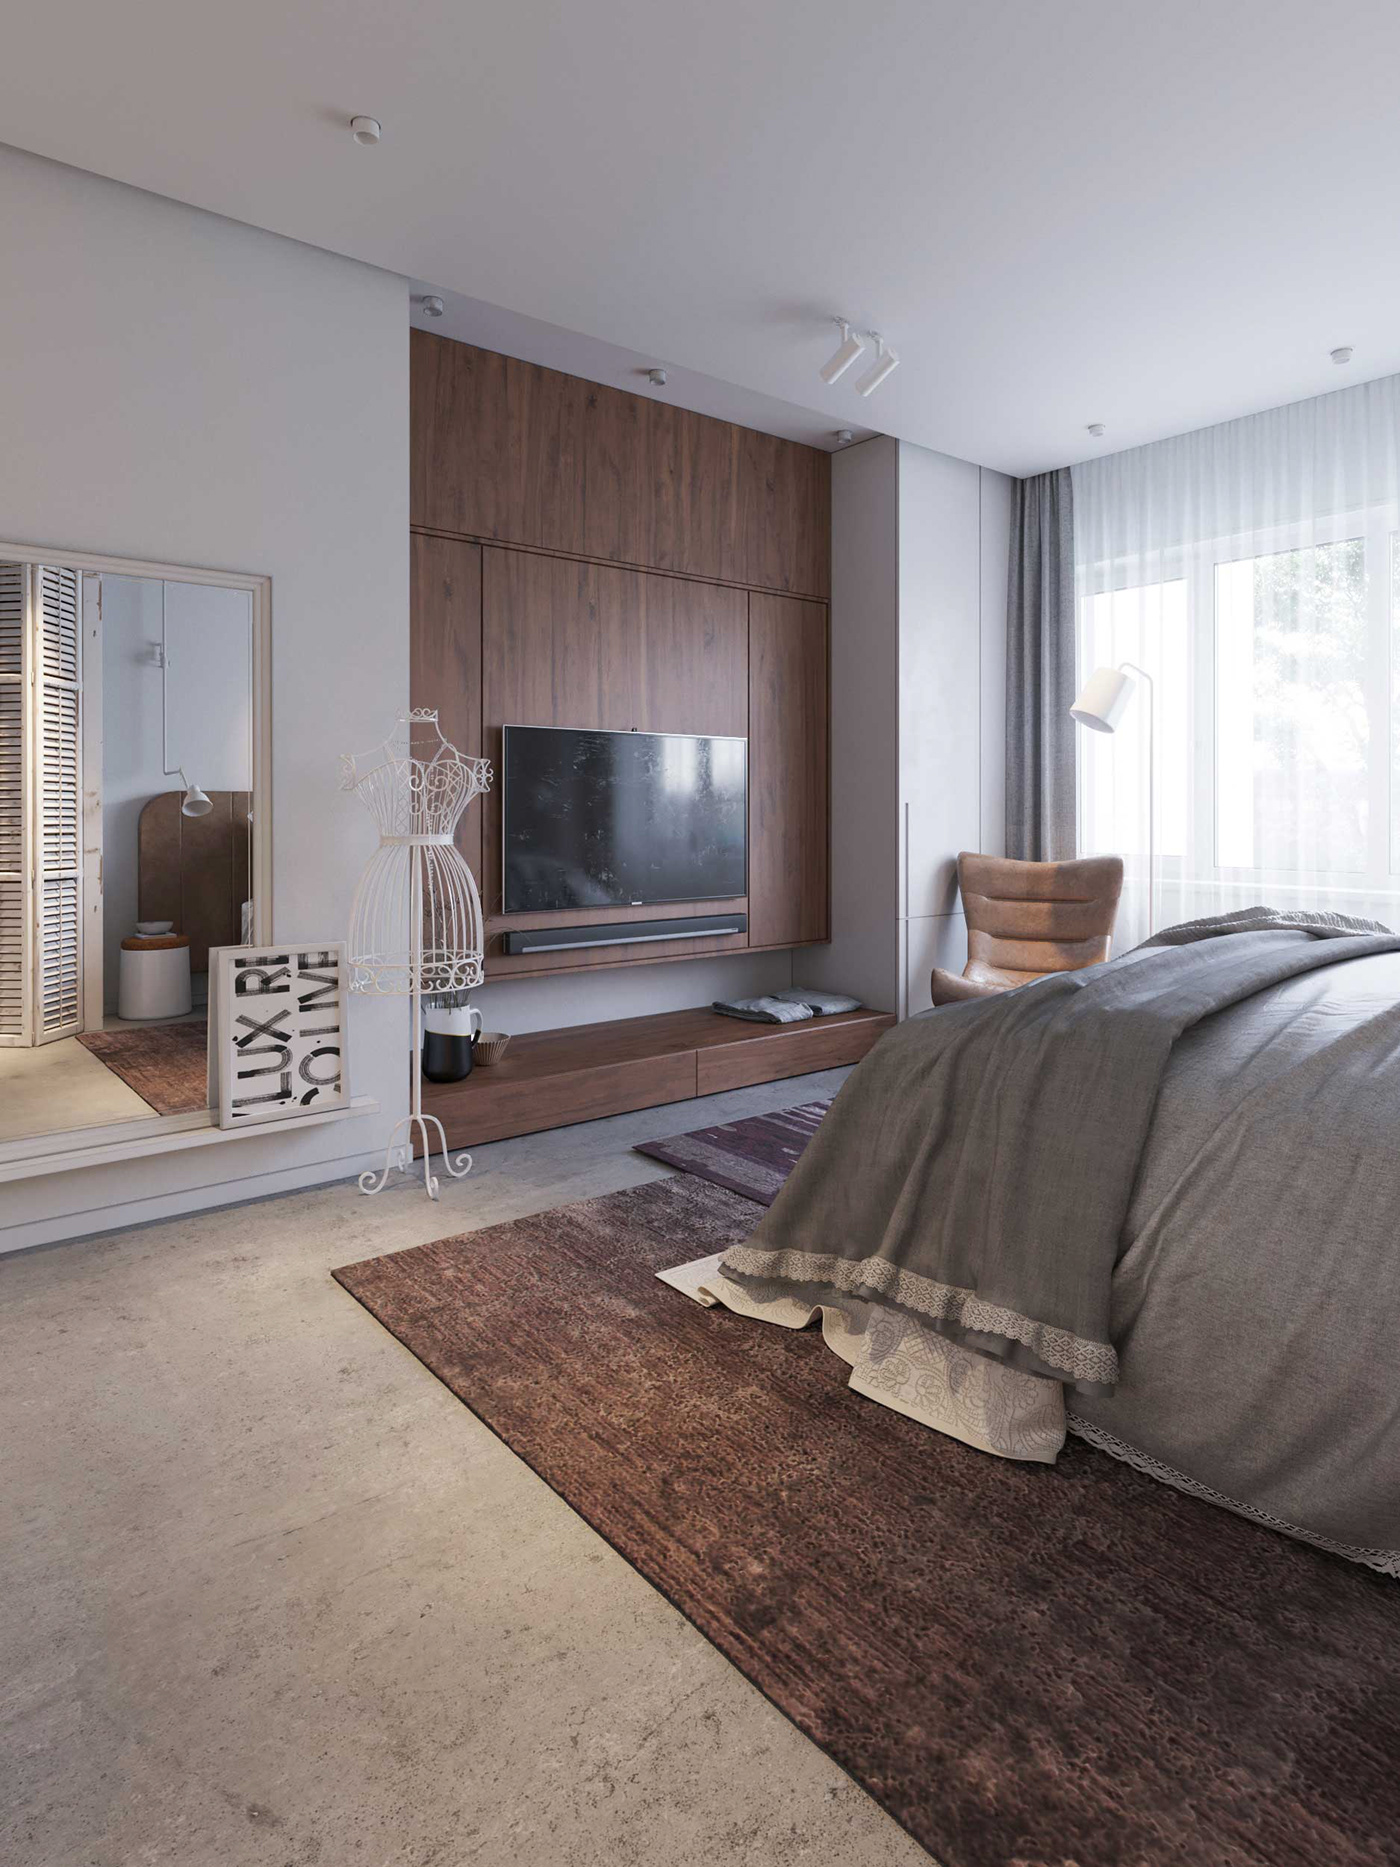 designinterior Scandinavian Minimalism livingroom Interior architecture